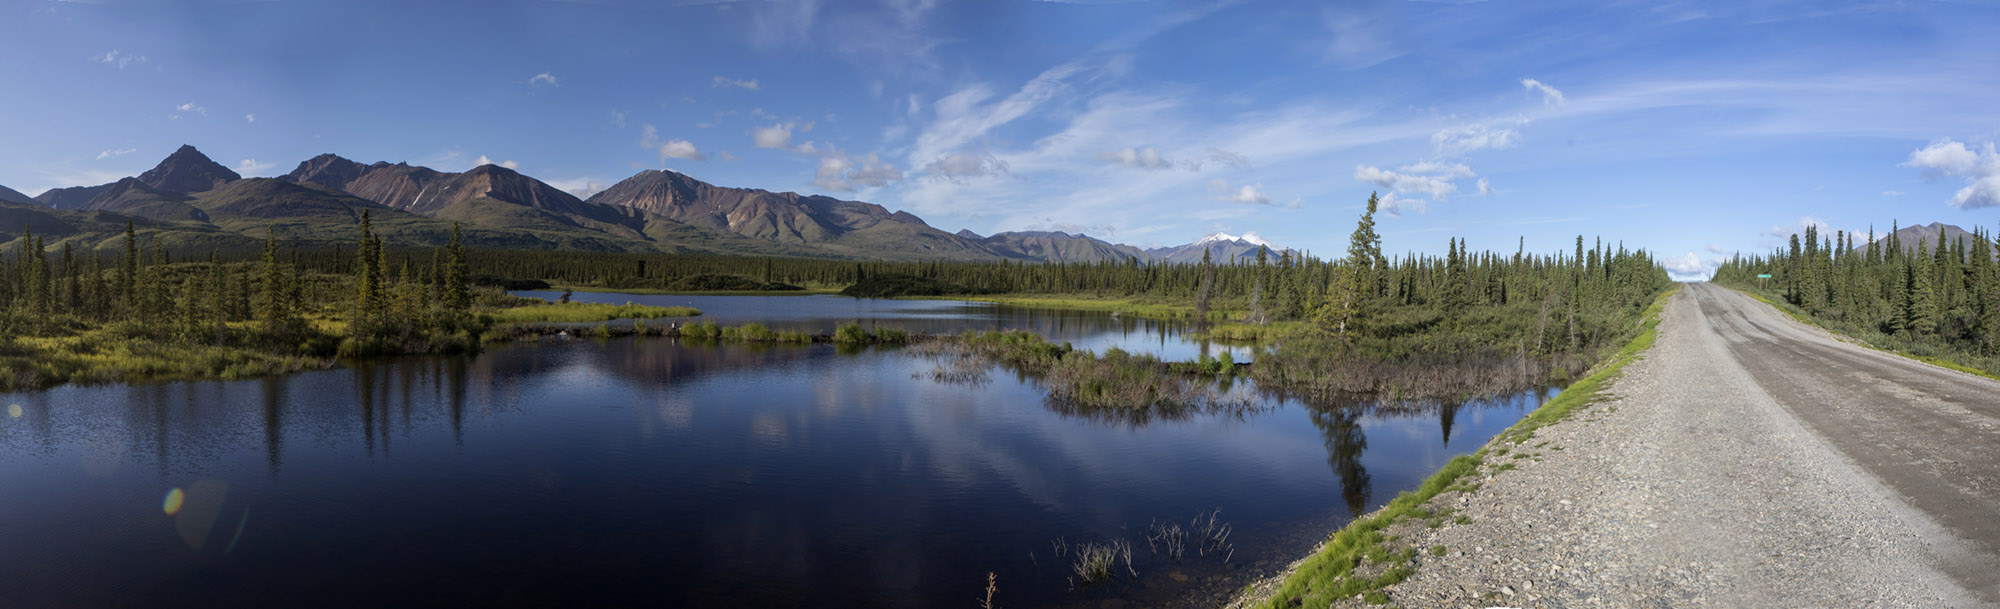 Alaska, denali, national park, state park, wilderness, nature, bart coolen, photography